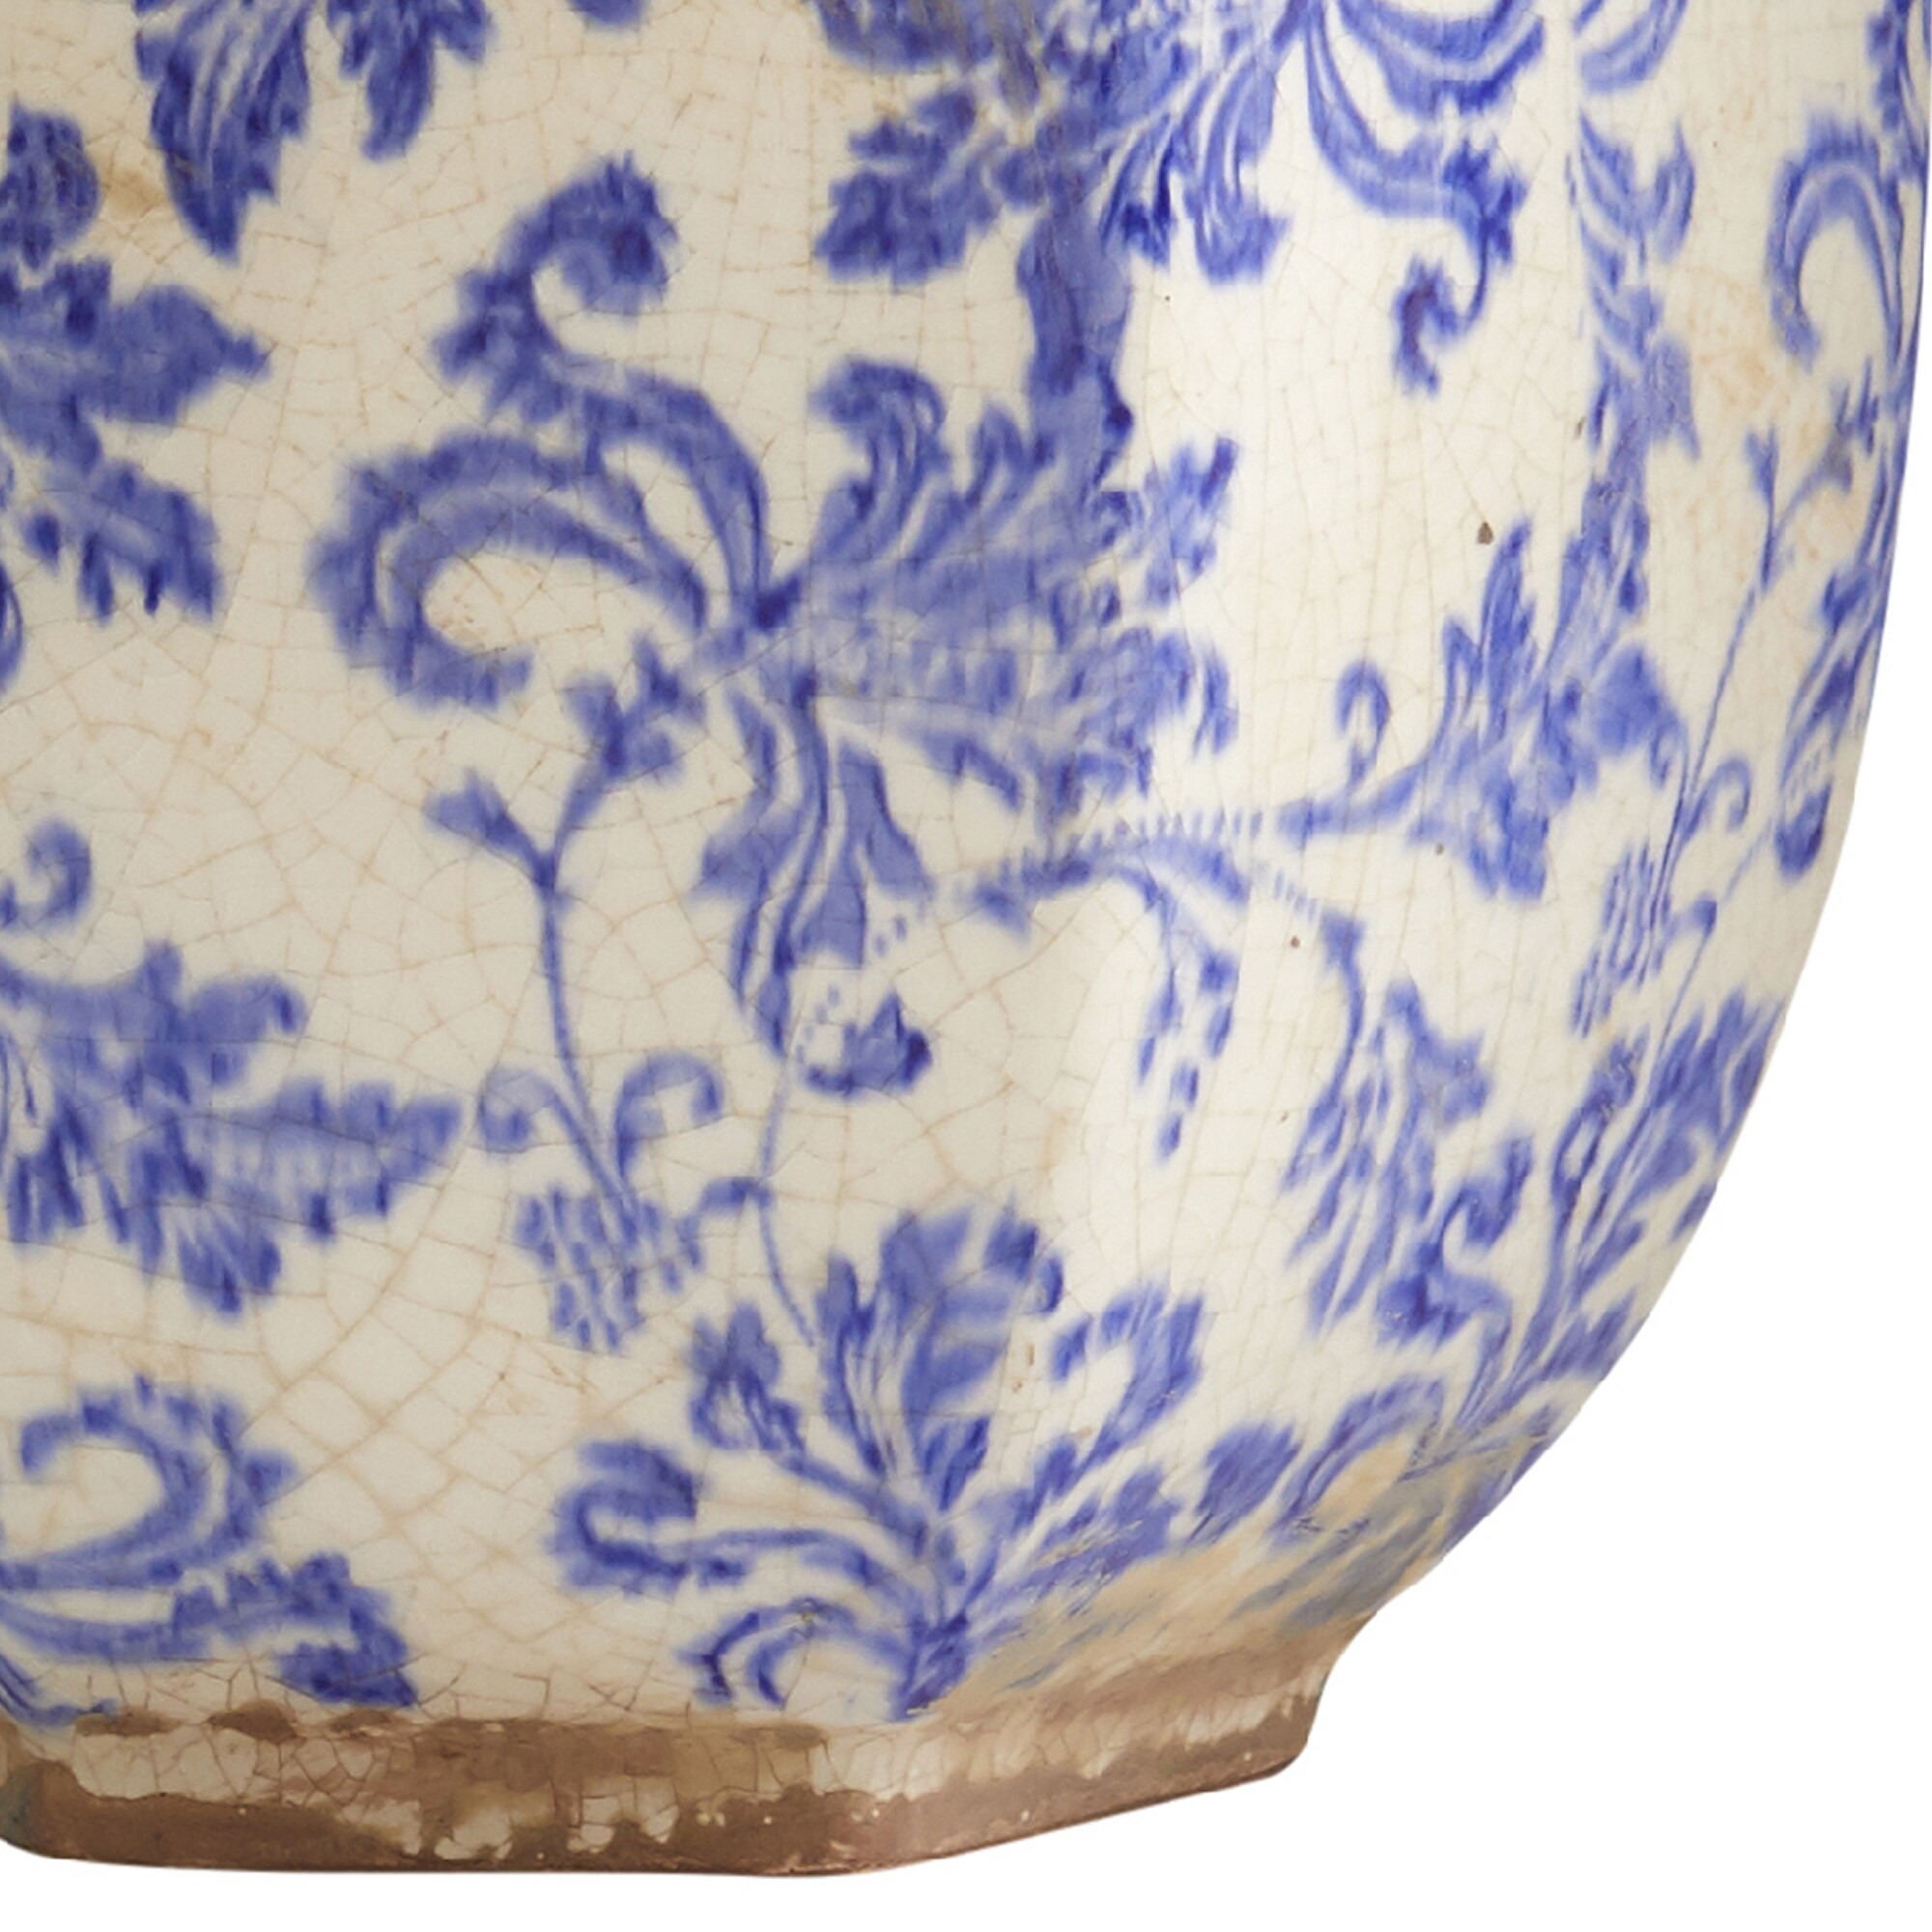 8.5" Nautical Ceramic Decorative Vase